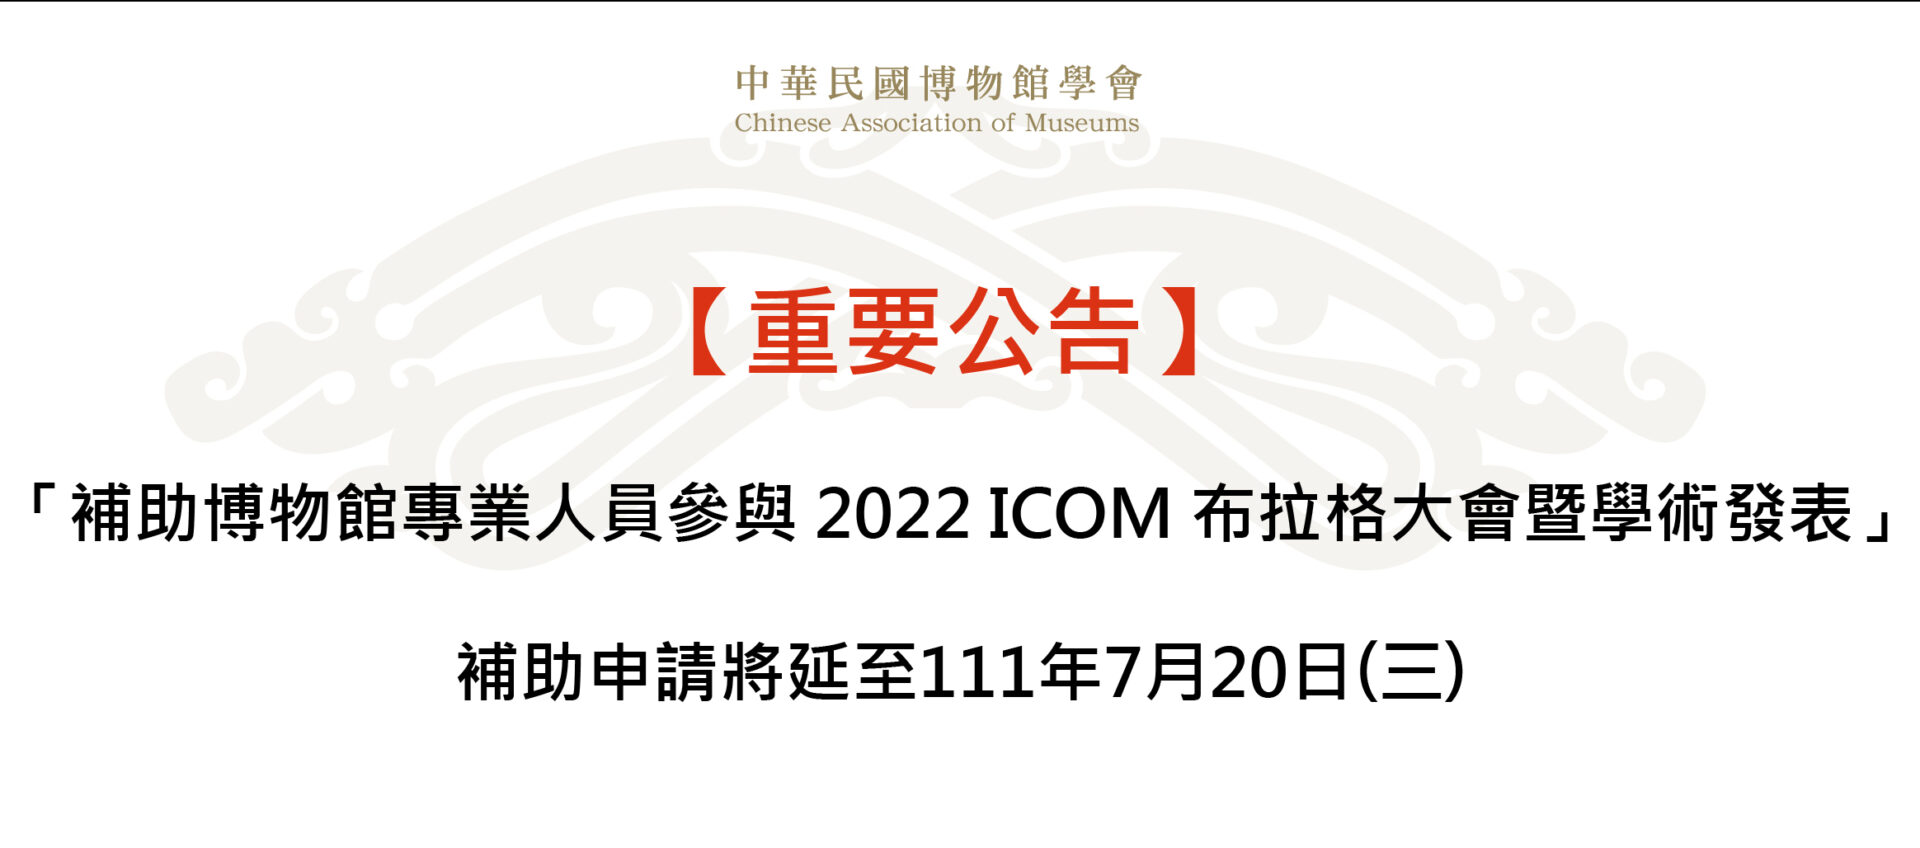 【重要公告】 「補助博物館專業人員參與 2022 ICOM 布拉格大會暨學術發表」補助申請延至111年7月20日(三)